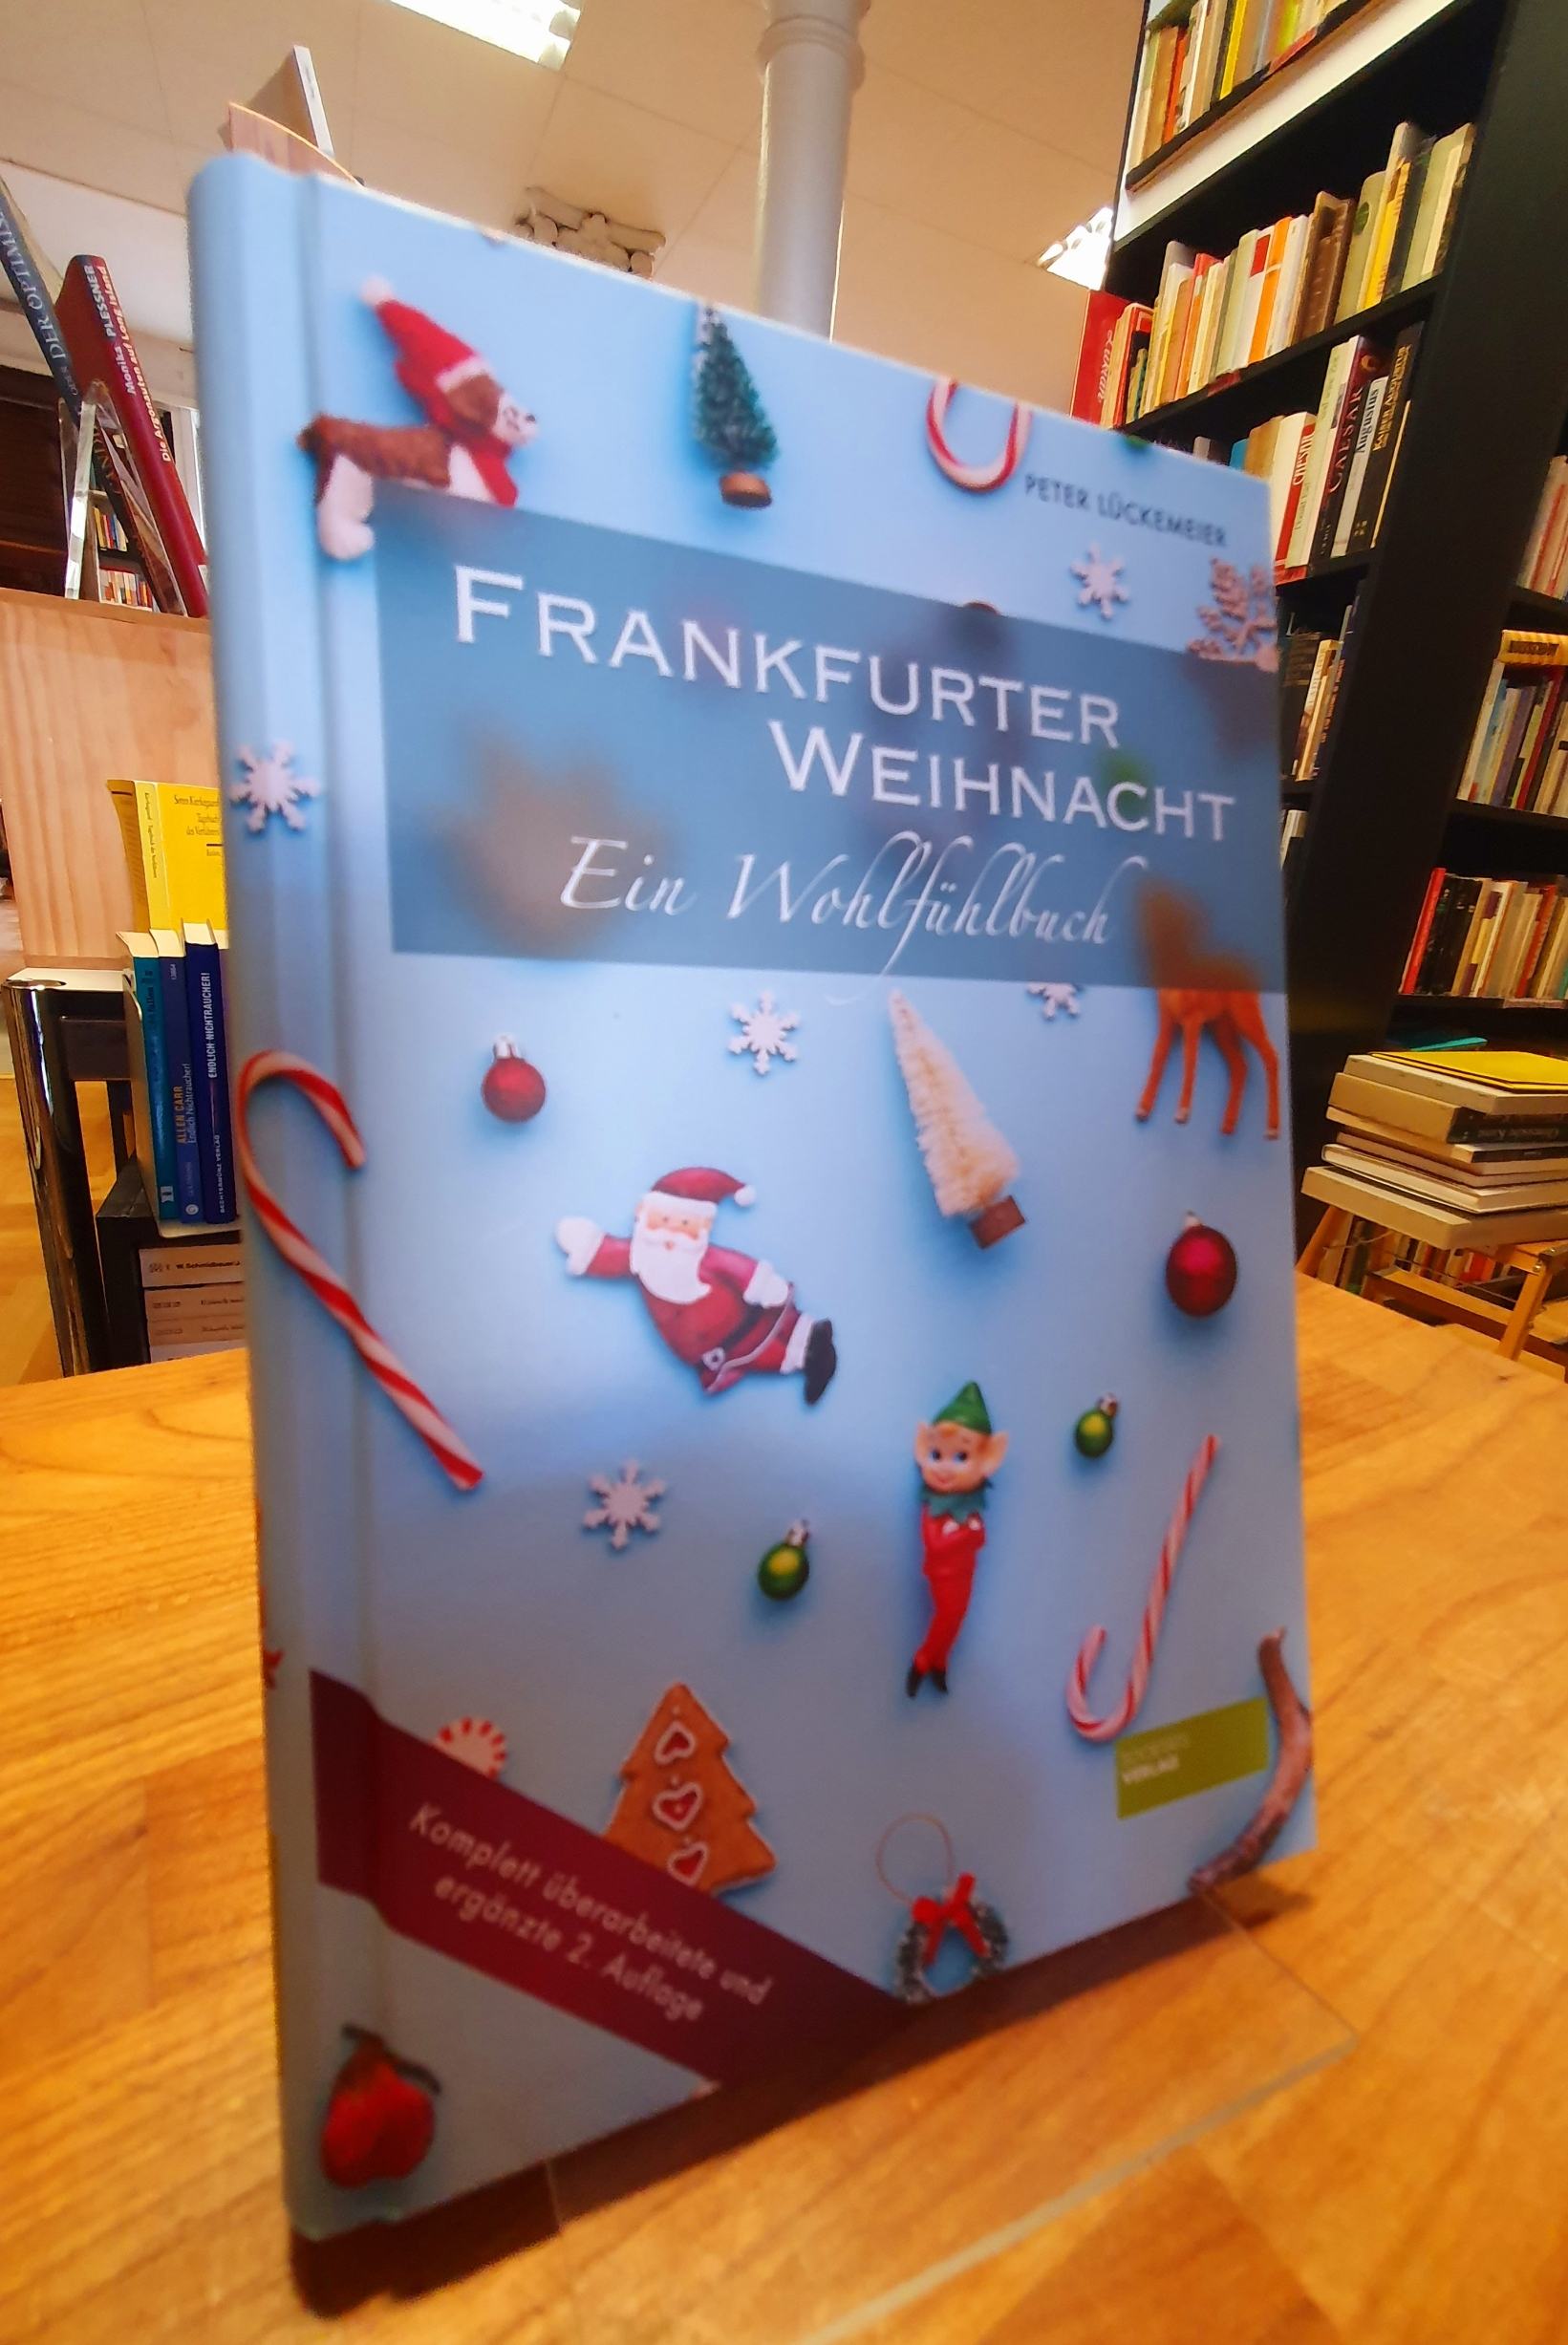 Lückemeier, Frankfurter Weihnacht – Ein Wohlfühlbuch,